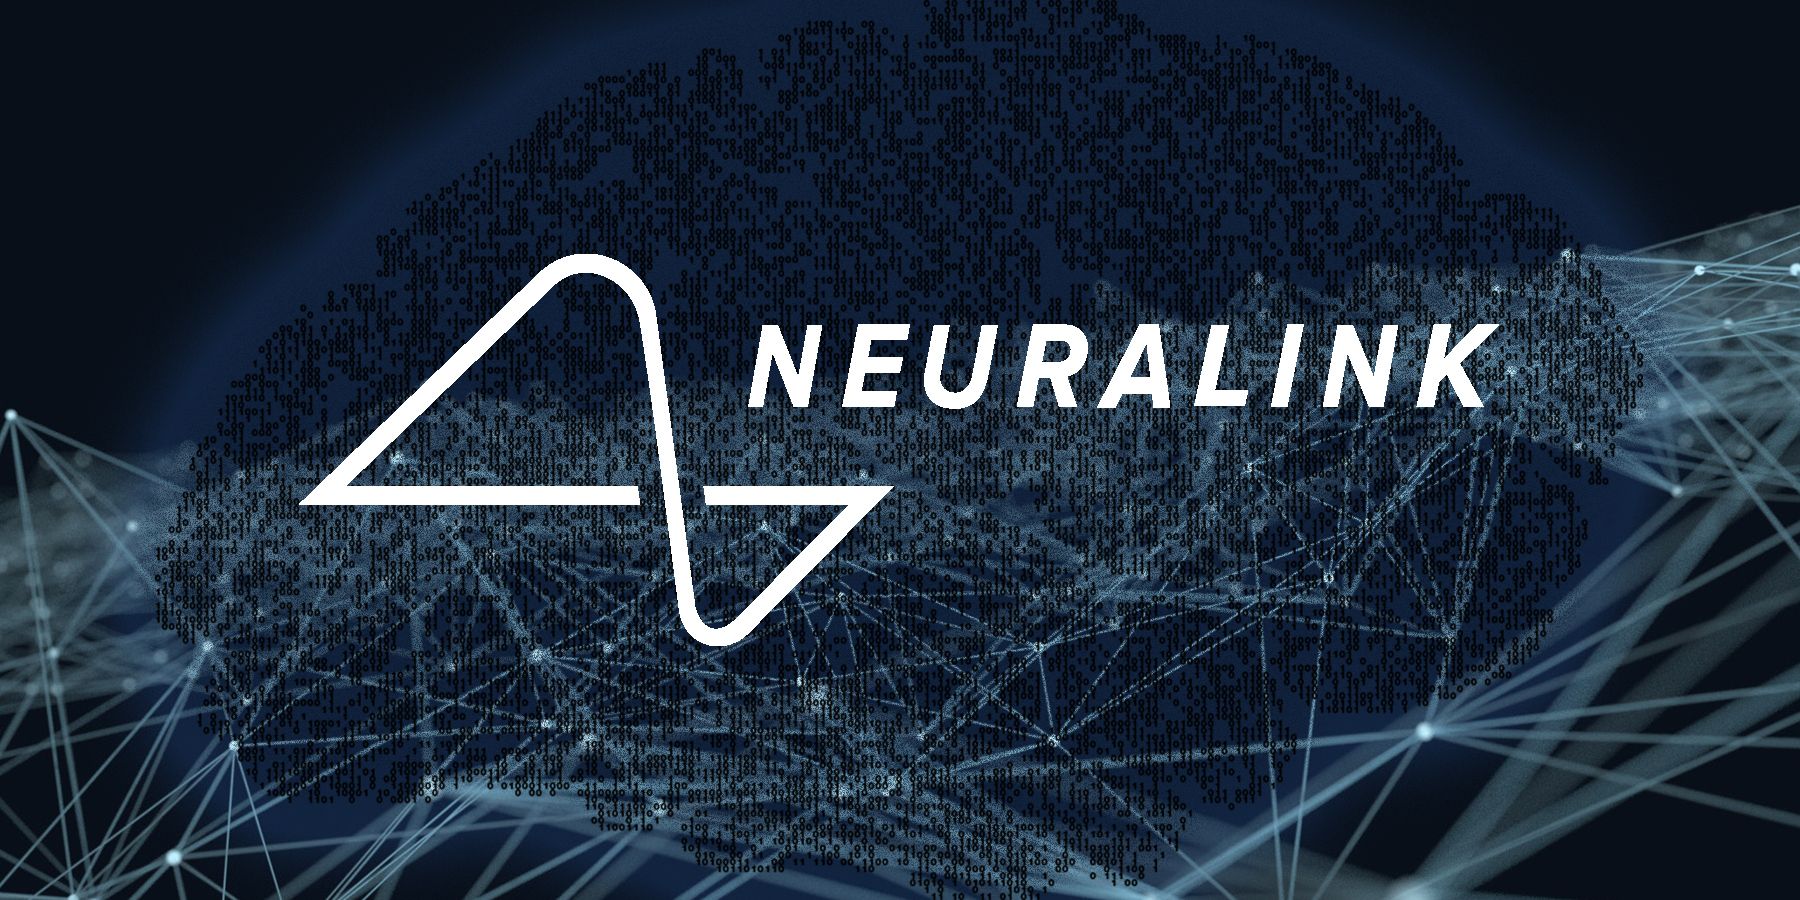 O logotipo Neuralink em letras brancas na frente de uma renderização azul escura de vias neurais digitalizadas